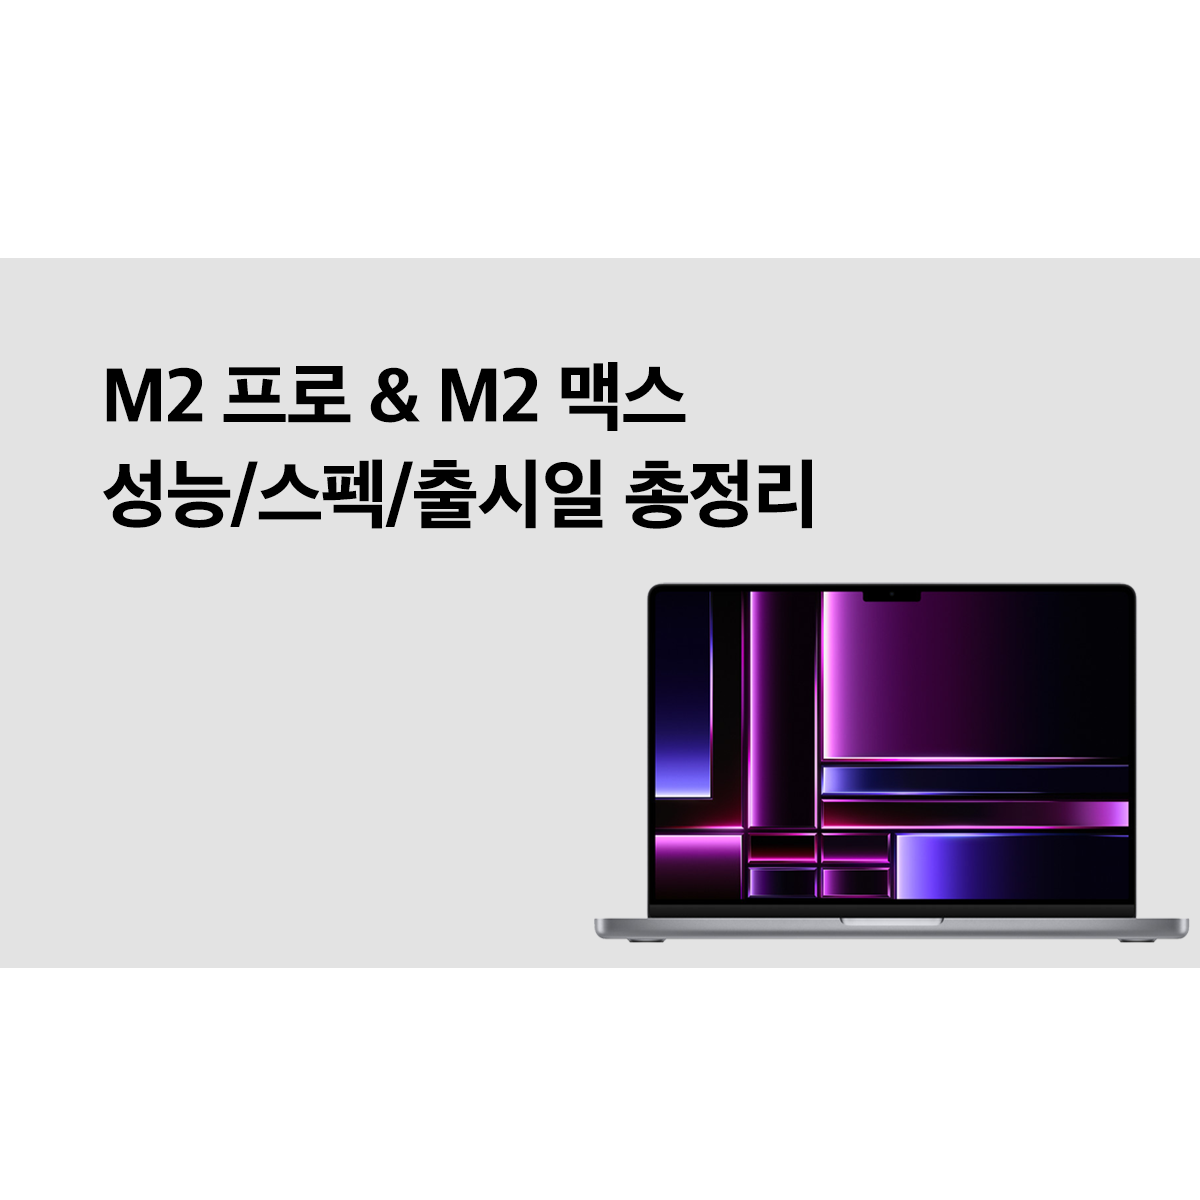 M2 프로&M2 맥스 맥북 프로, 성능/스펙/출시일 총정리